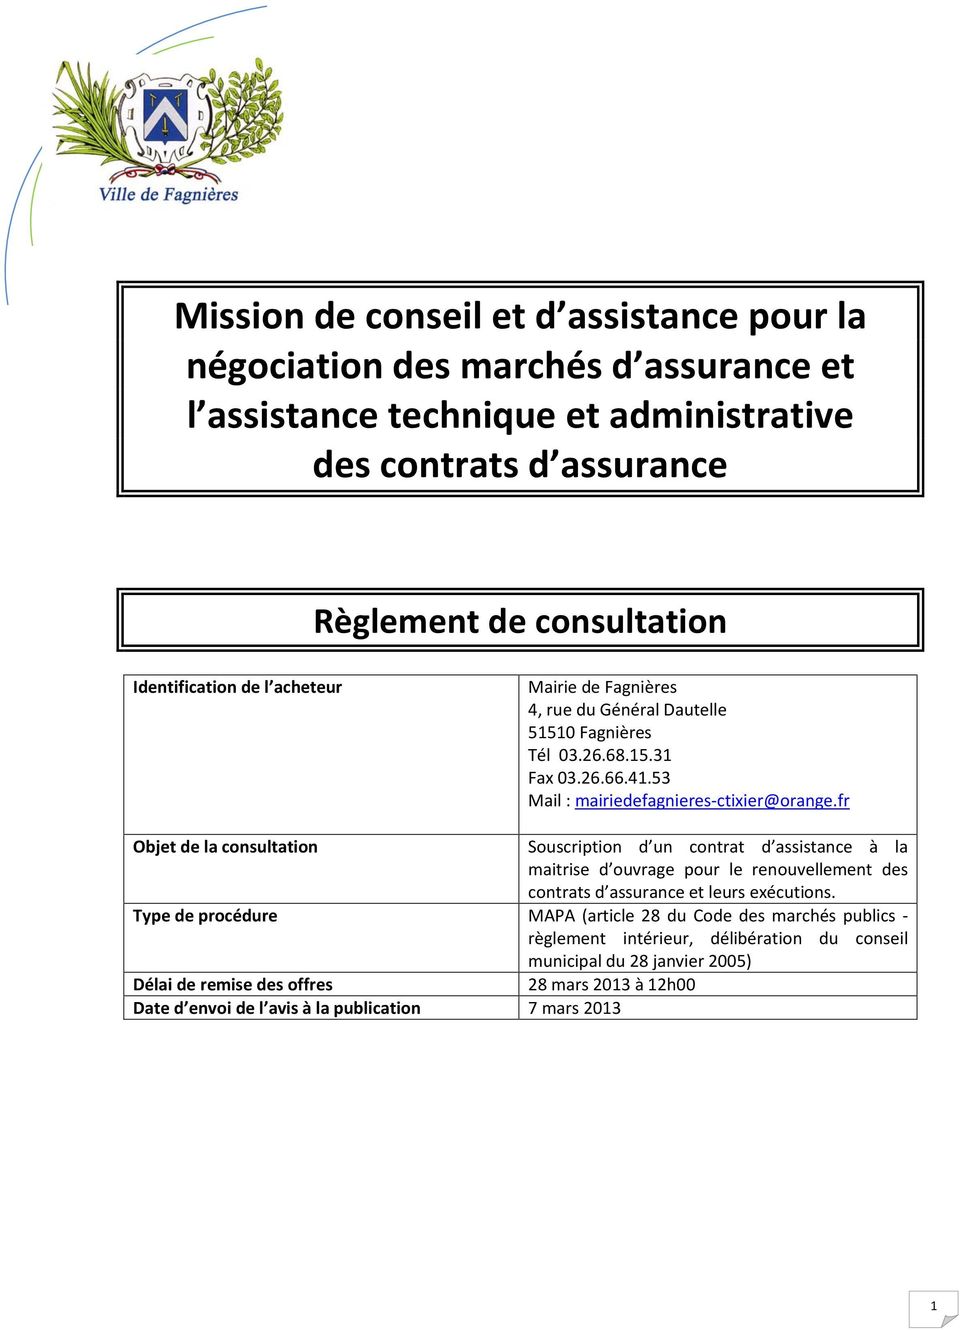 fr Objet de la consultation Souscription d un contrat d assistance à la maitrise d ouvrage pour le renouvellement des contrats d assurance et leurs exécutions.